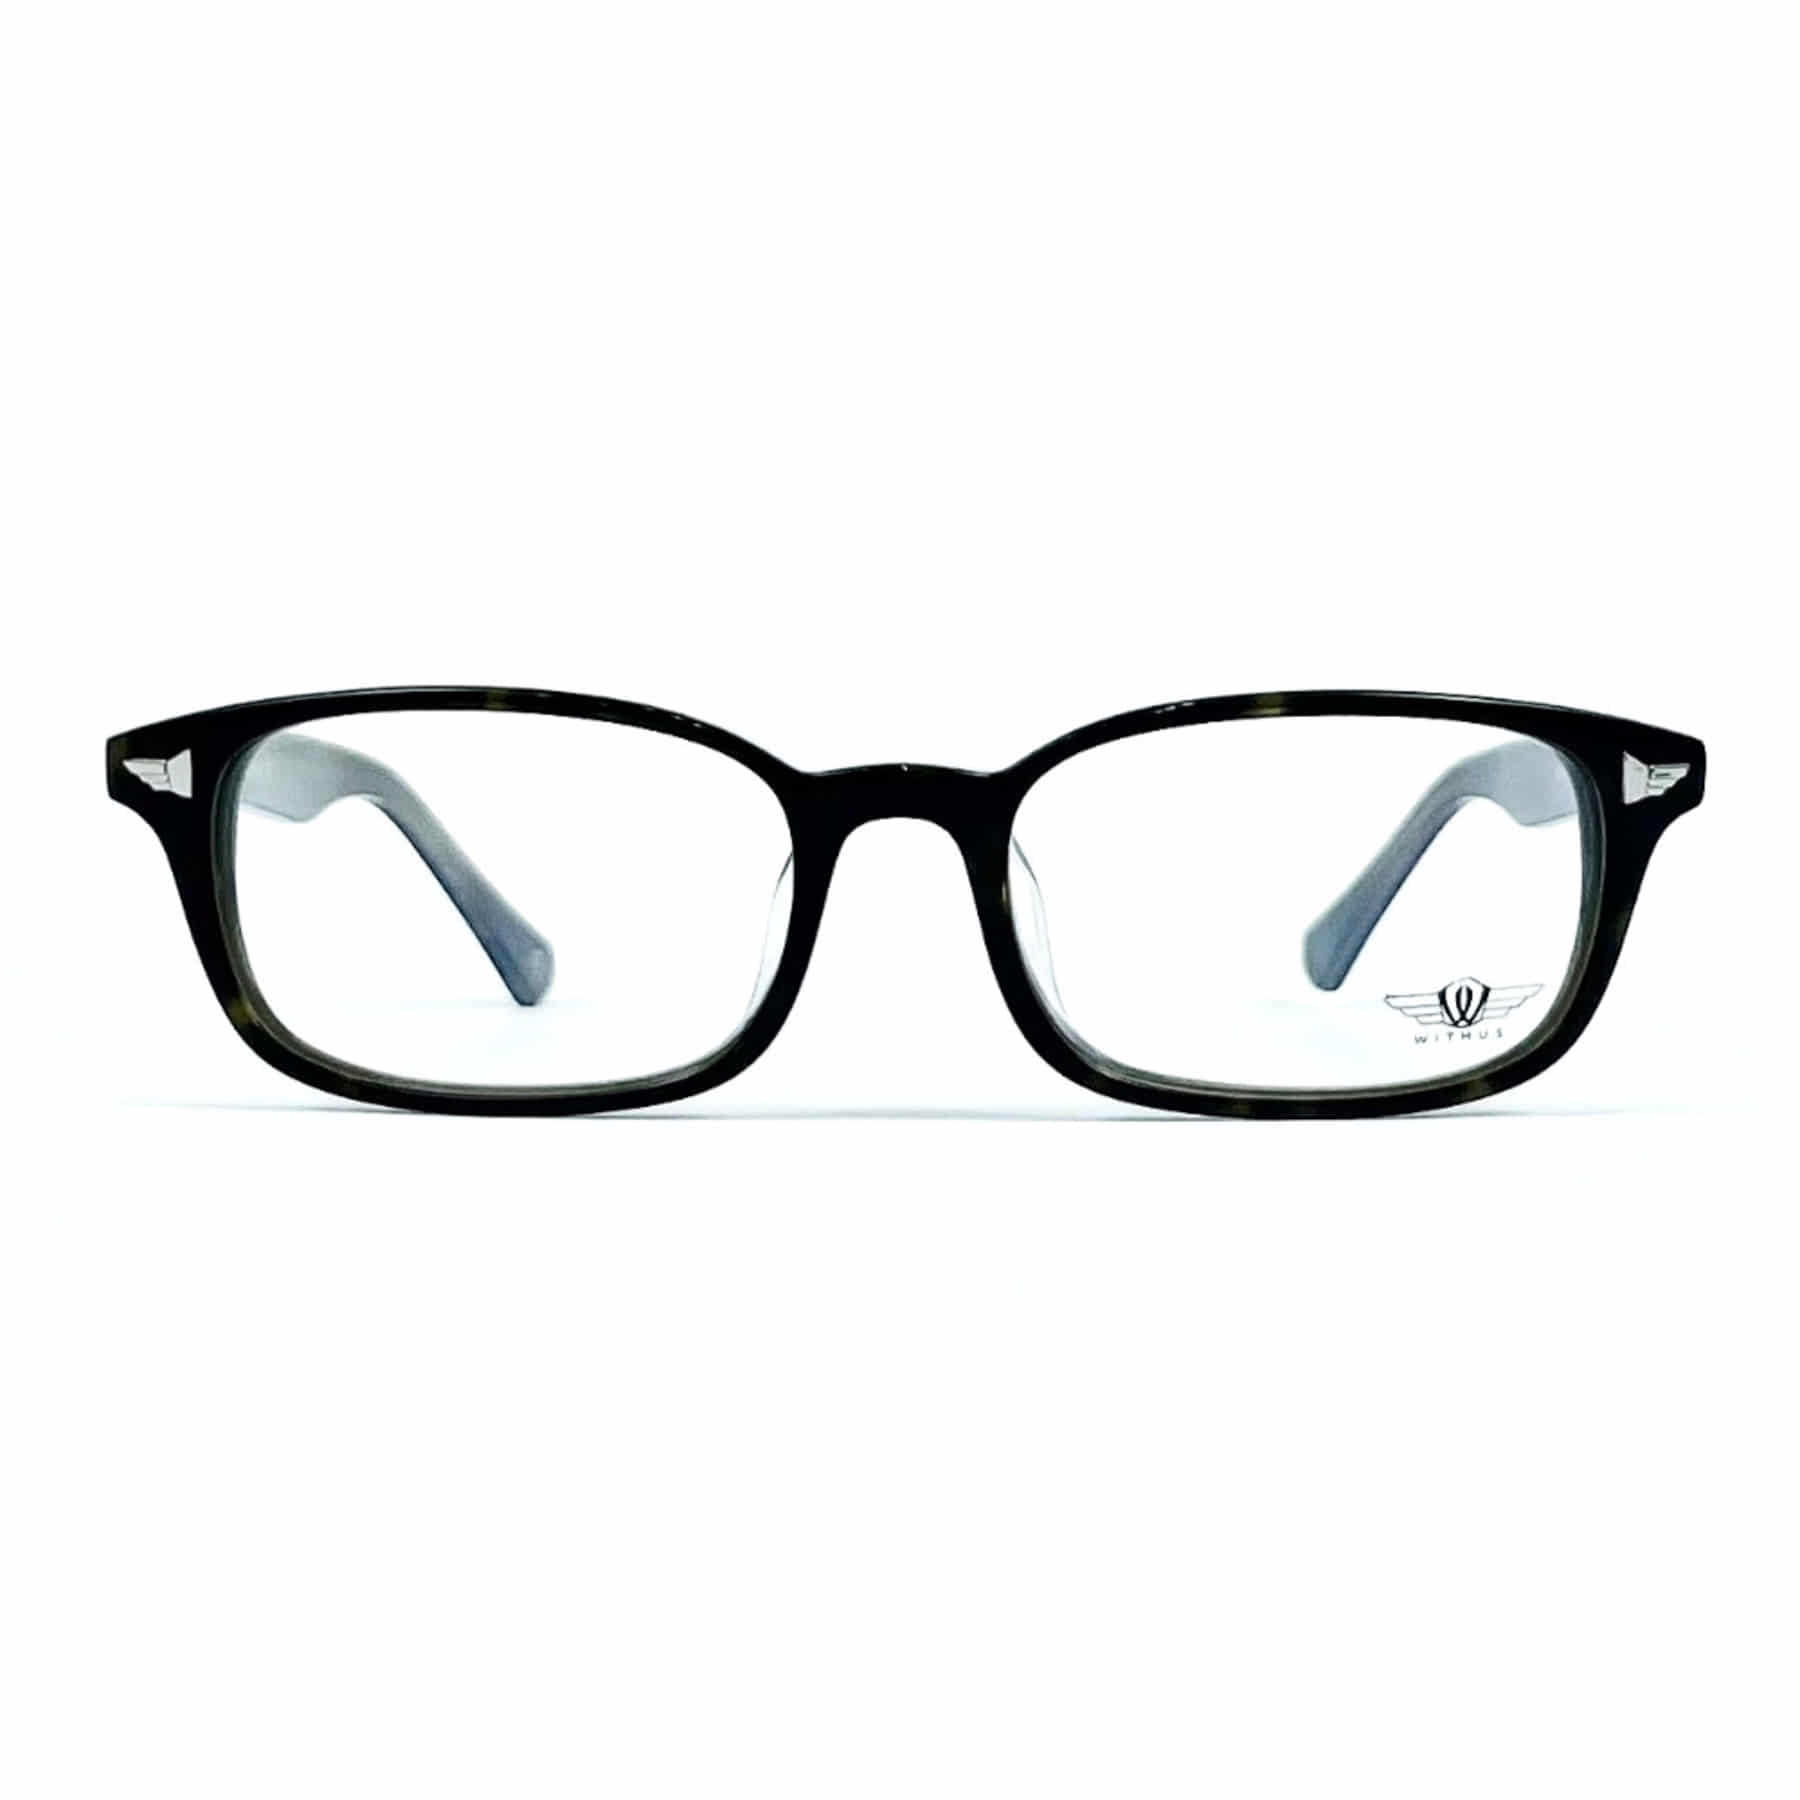 WITHUS-8107, Korean glasses, sunglasses, eyeglasses, glasses